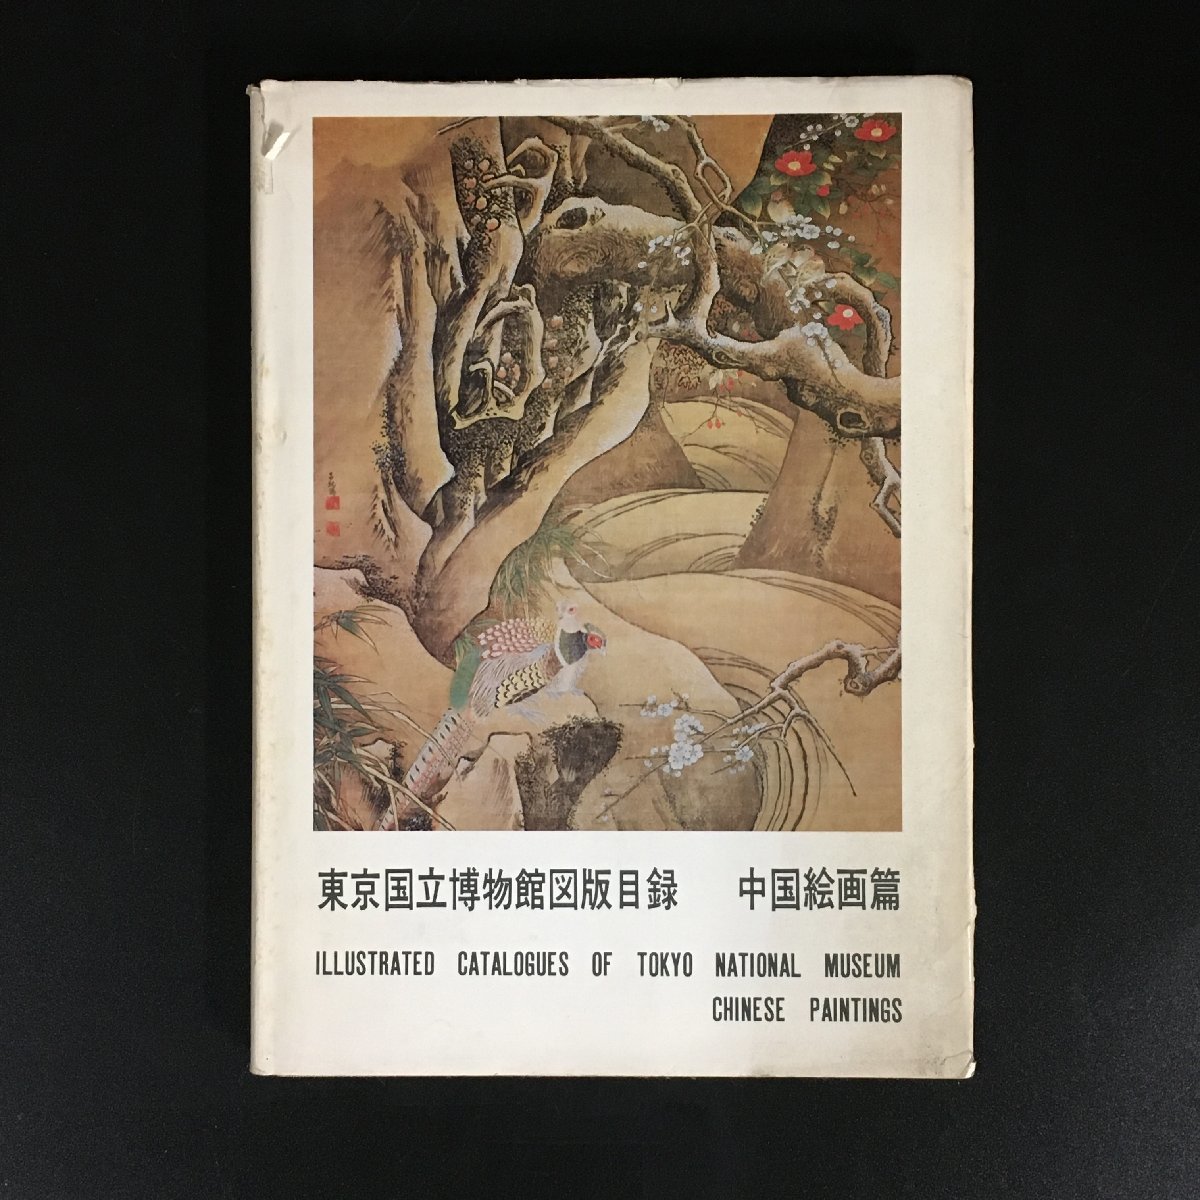 सूचीपत्र टोक्यो राष्ट्रीय संग्रहालय चीनी चित्रकला सूचीपत्र प्रथम संस्करण सूचीपत्र दक्षिणी सांग राजवंश क्यू बैशी, चित्रकारी, कला पुस्तक, संग्रह, सूची